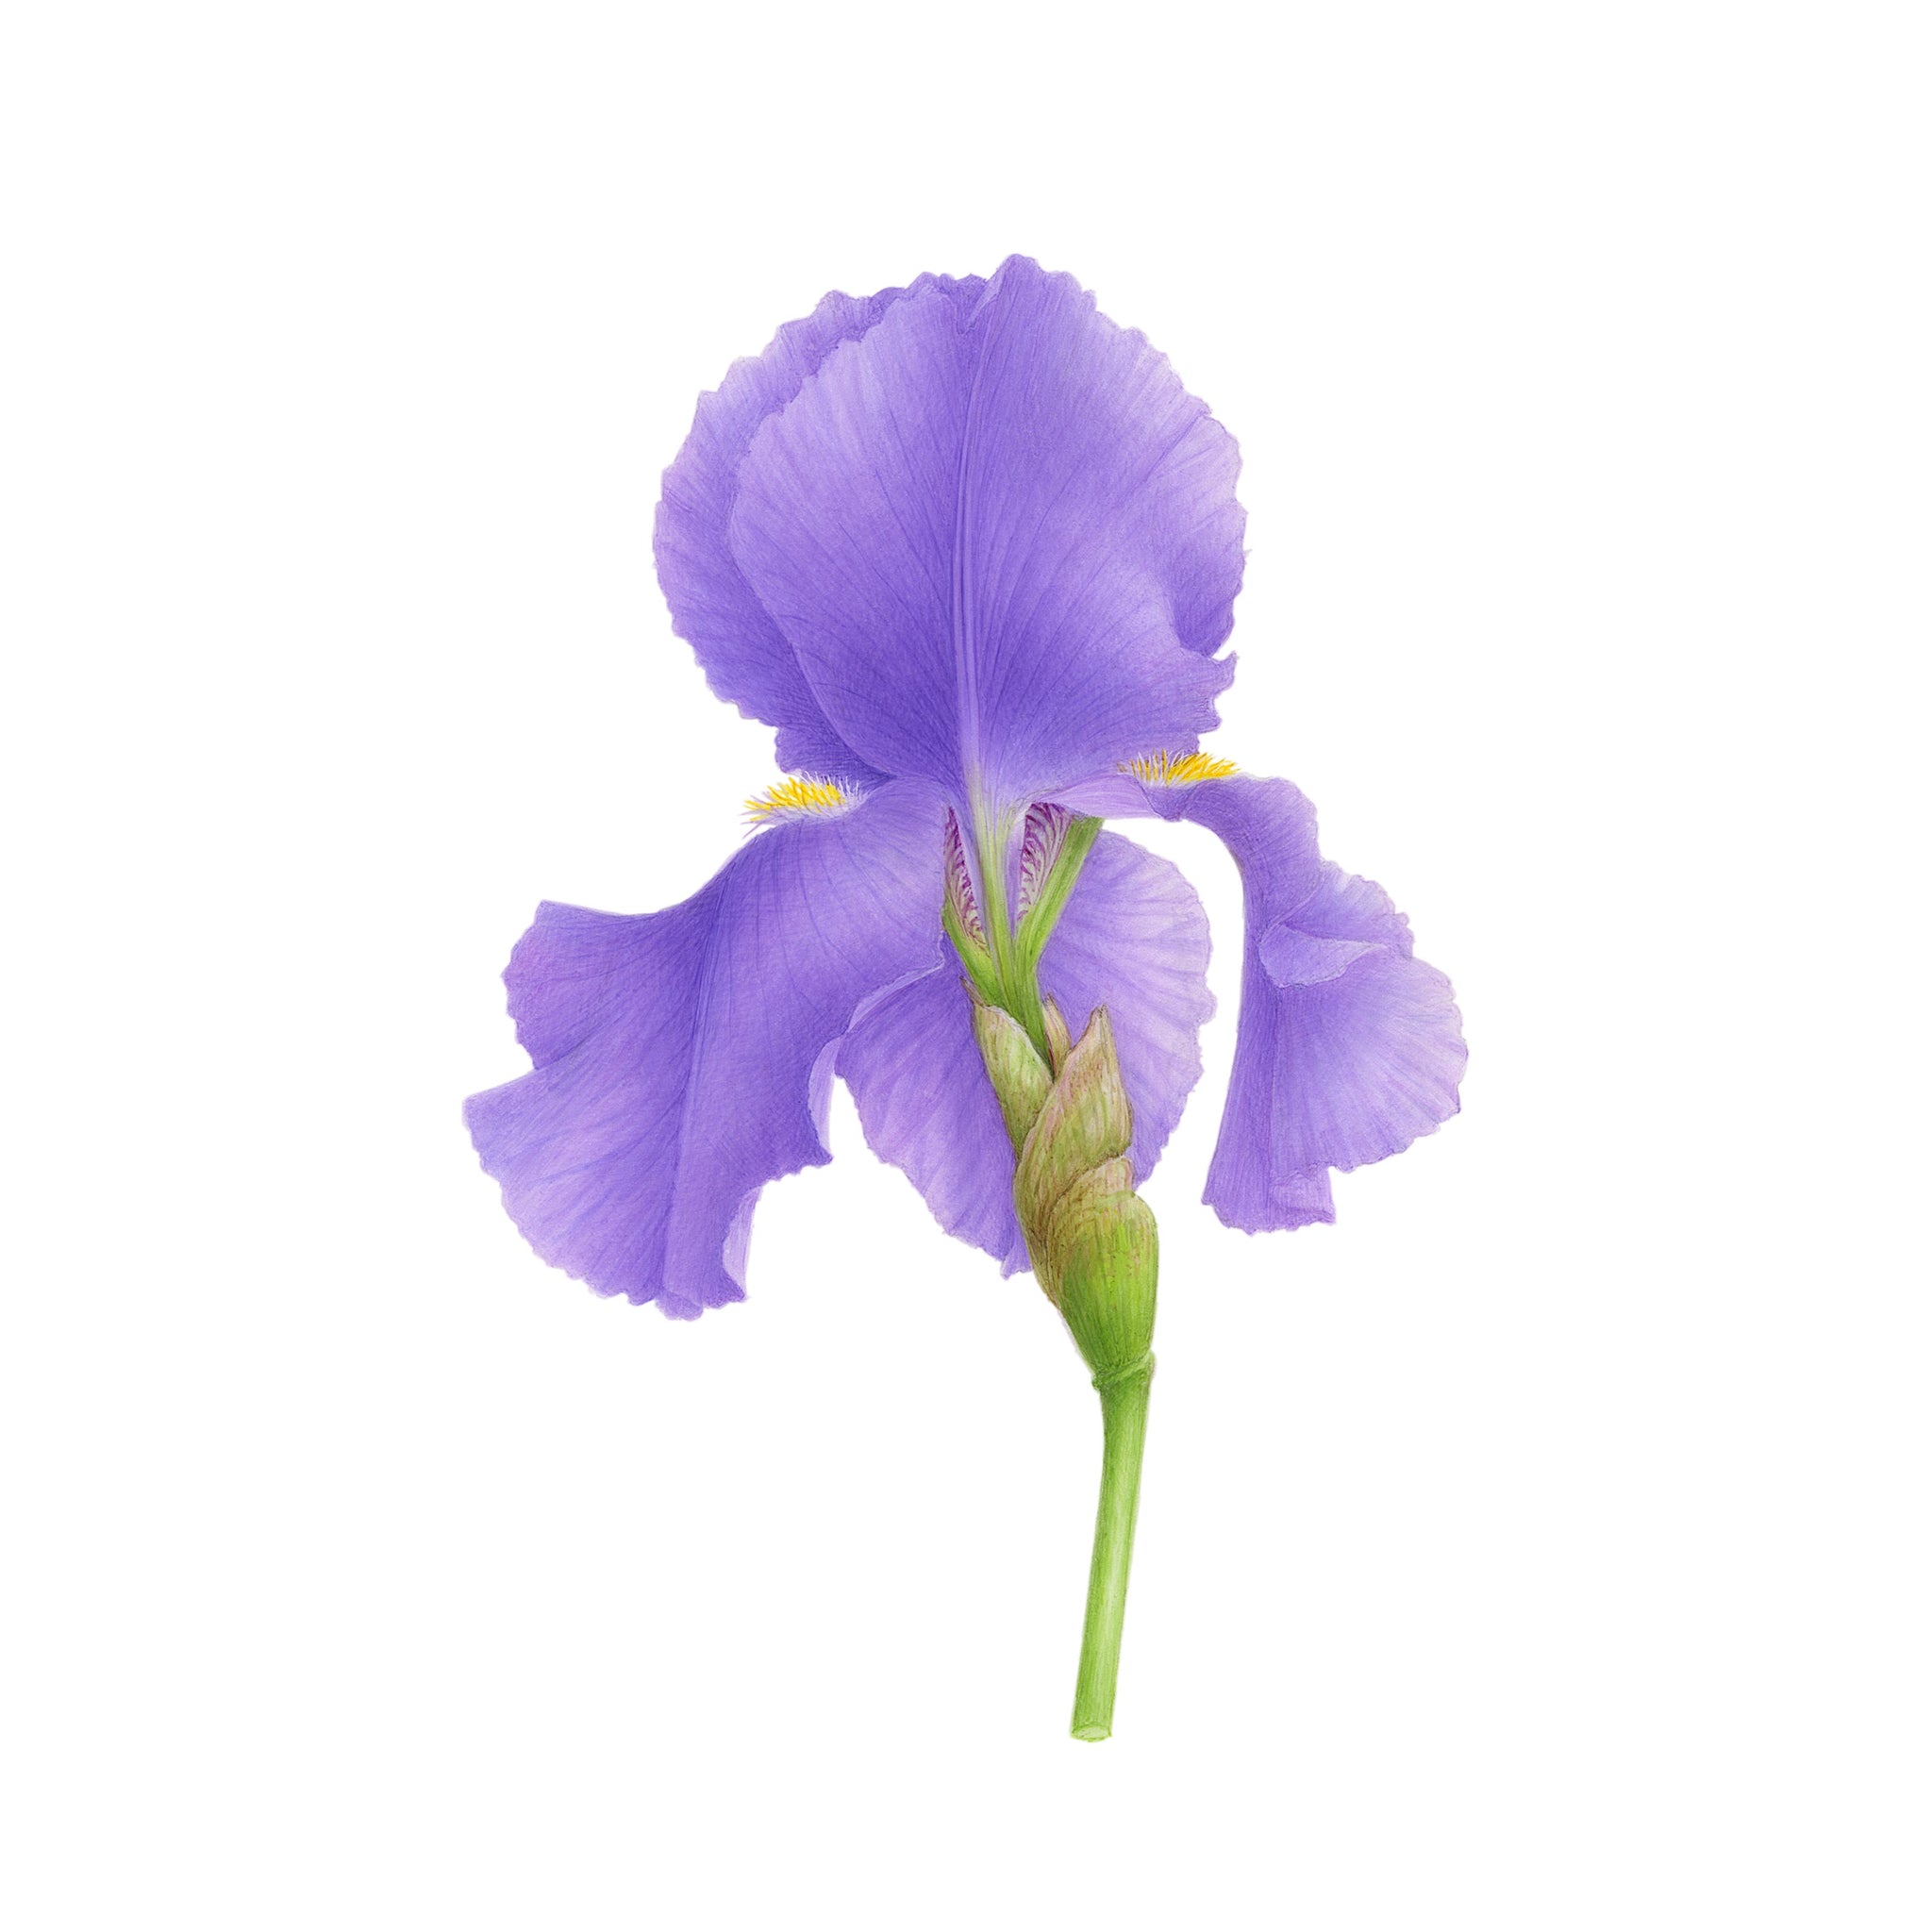 Mauve iris - VINCENT JEANNEROT. Botanical watercolor